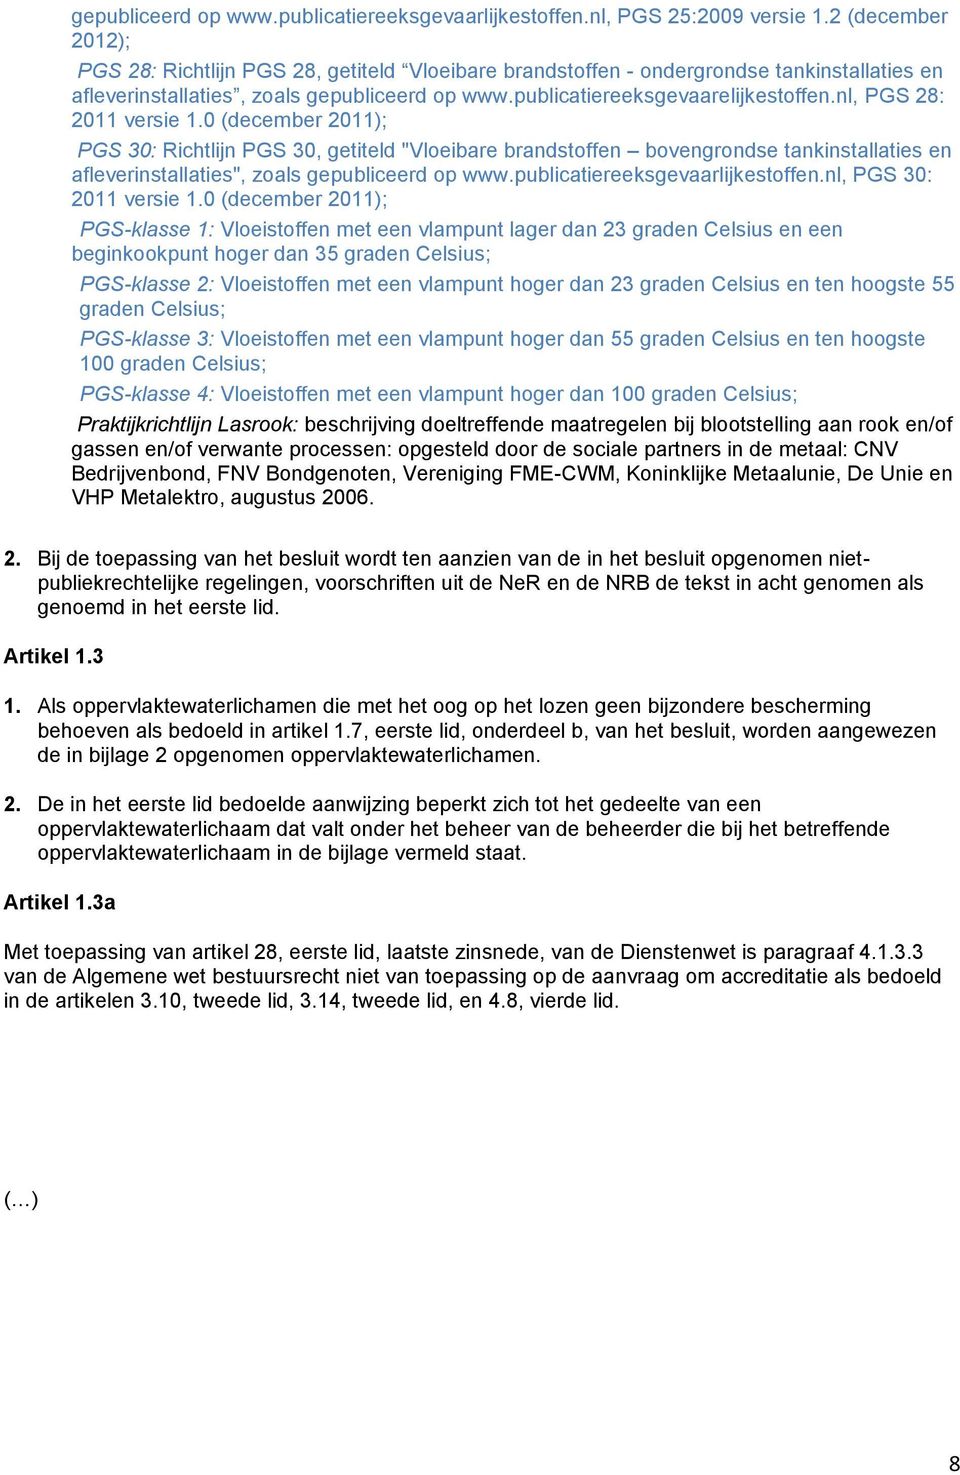 nl, PGS 28: 2011 versie 1.0 (december 2011); PGS 30: Richtlijn PGS 30, getiteld "Vloeibare brandstoffen bovengrondse tankinstallaties en afleverinstallaties", zoals gepubliceerd op www.